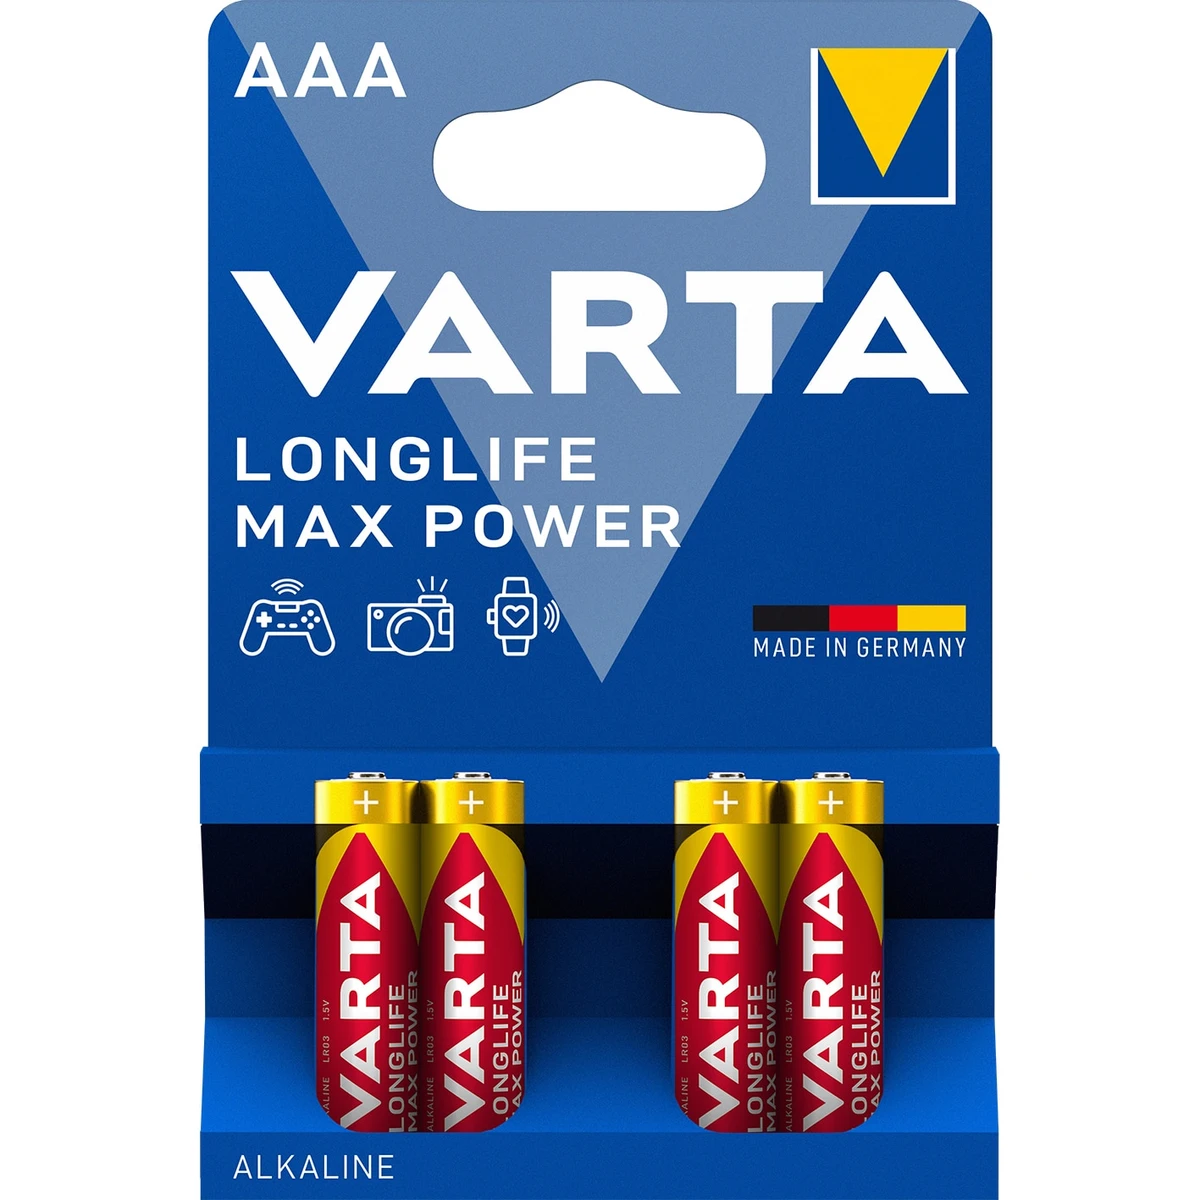 Varta Longlife Max Power AAA LR03 1,5 V nagy teljesítményű alkáli elem 4 db